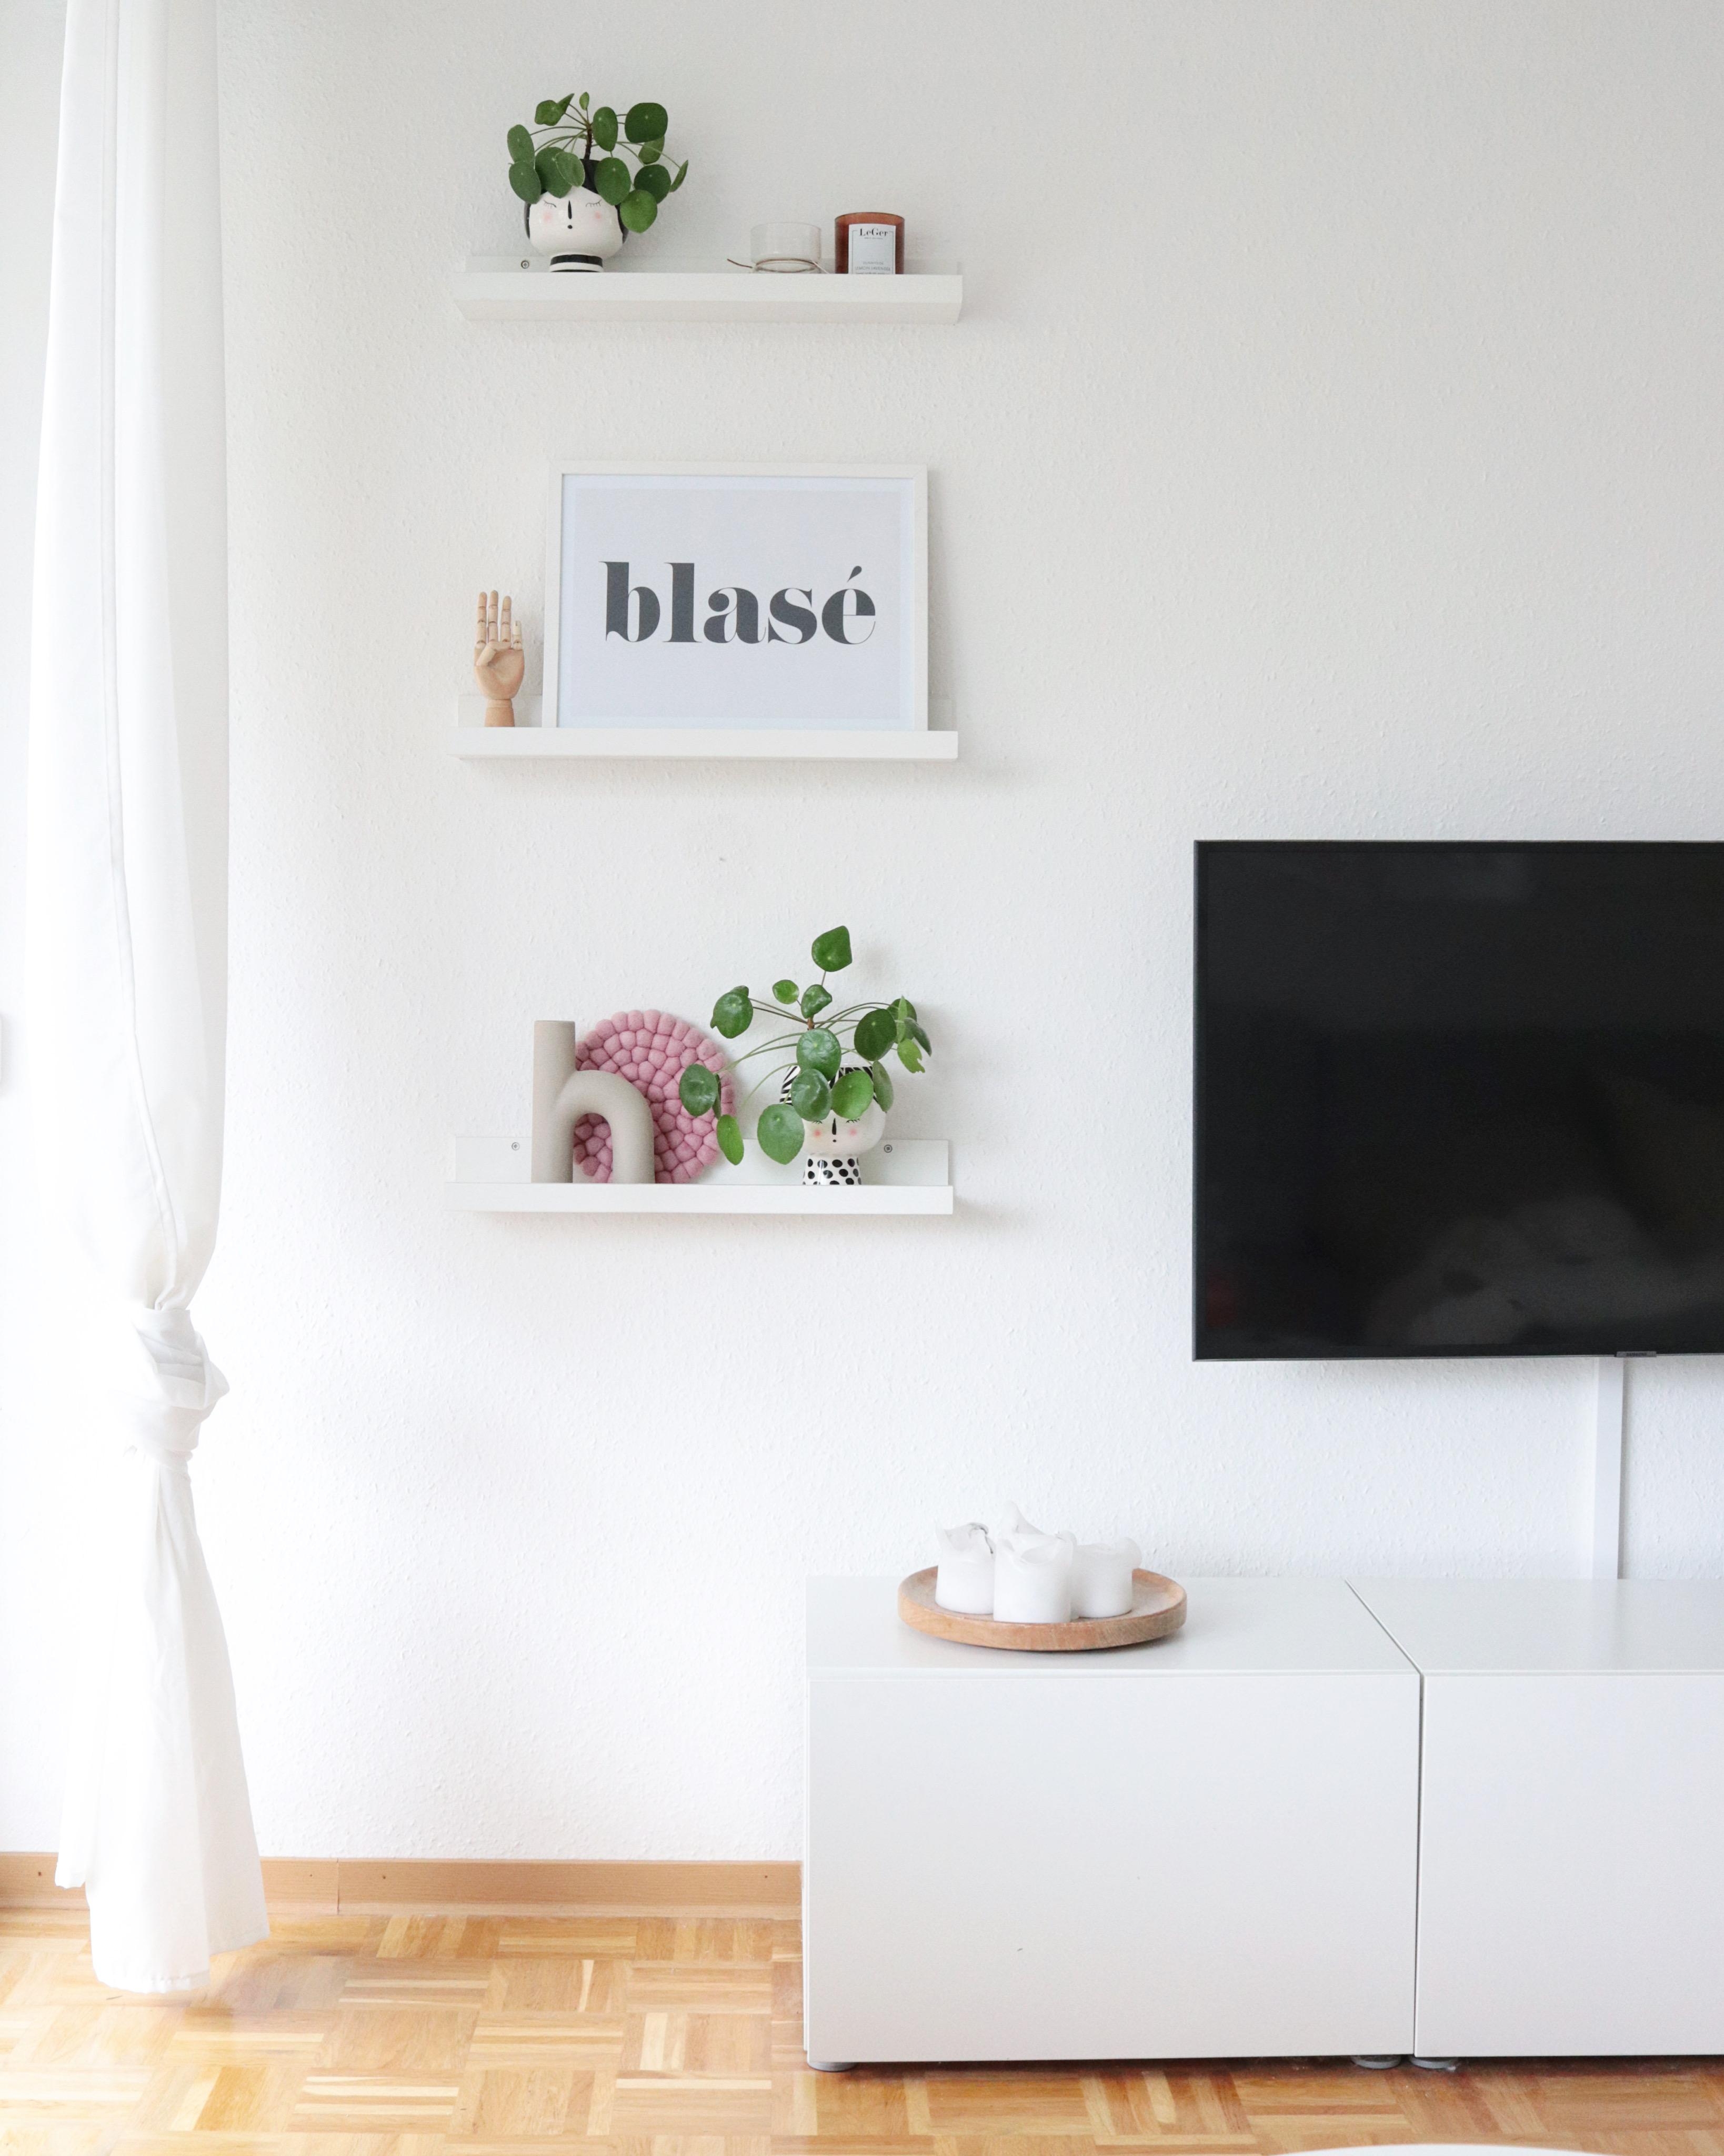 Die Bilderleisten sind so schön vielseitig 🥰
#bilderleisten #wohnzimmer #skandi #pilea #livingroom #dekoideen #deko